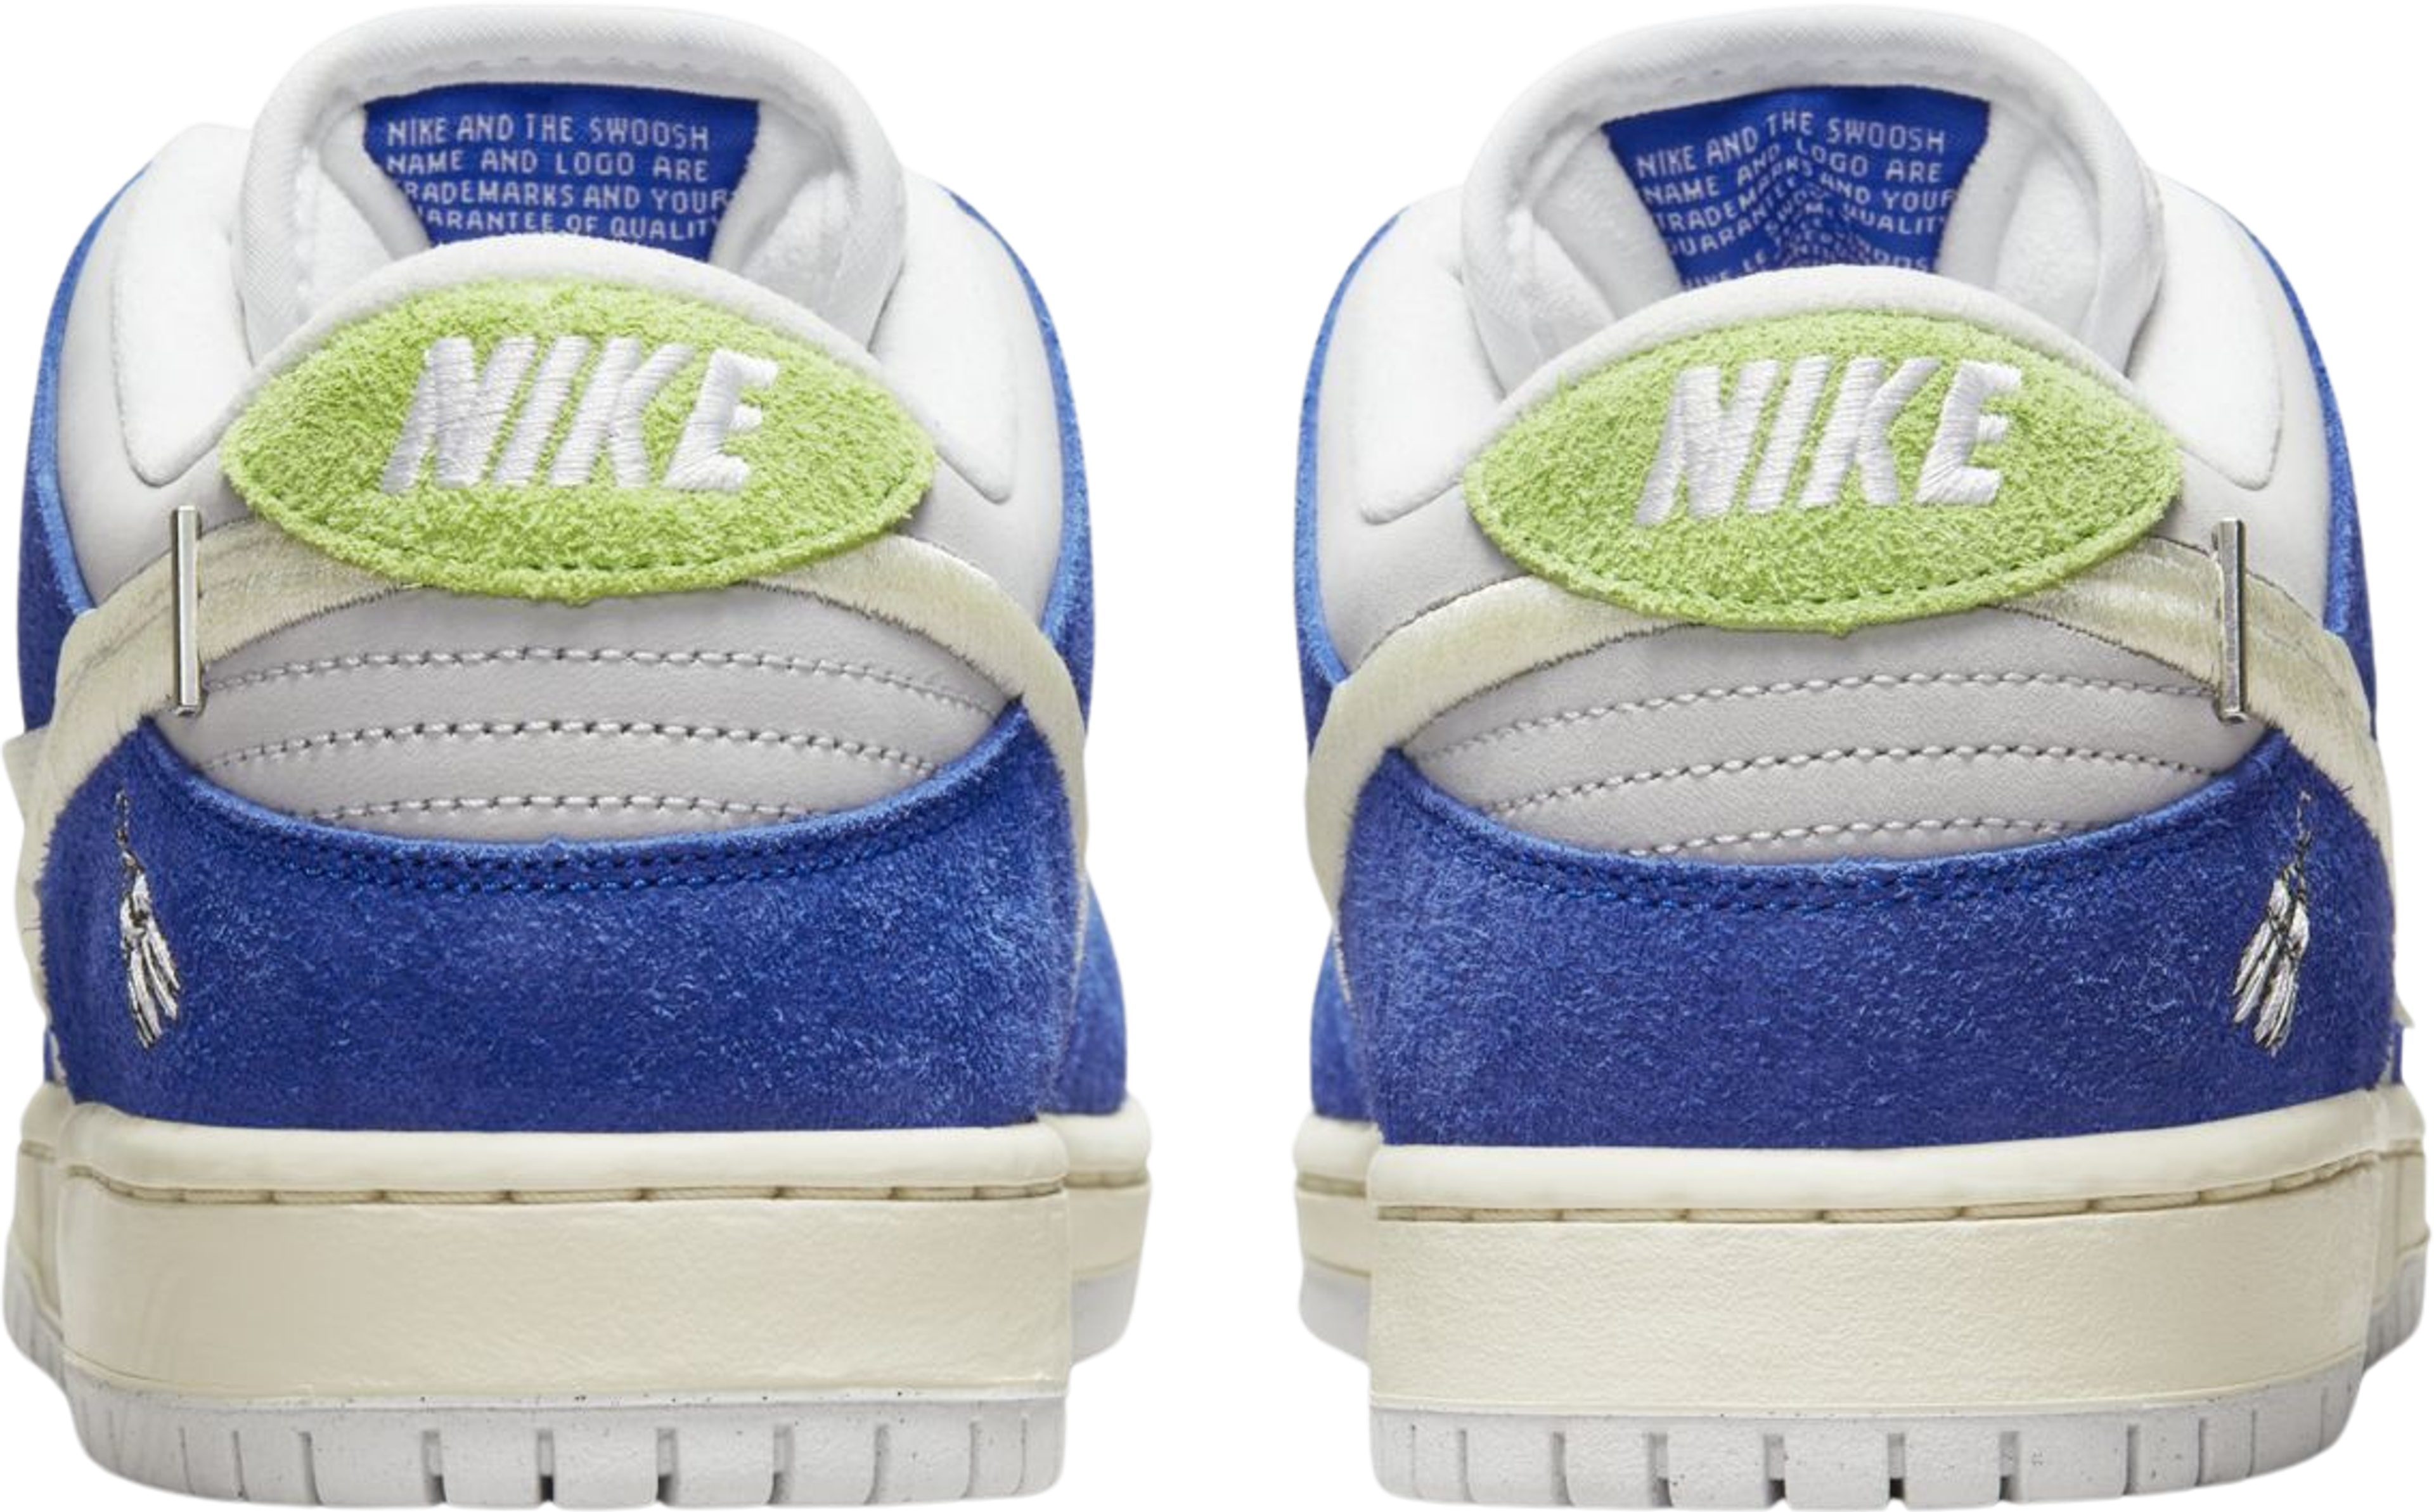 Nike SB Dunk Low Pro Fly Streetwear Gardenia Raffles and Release